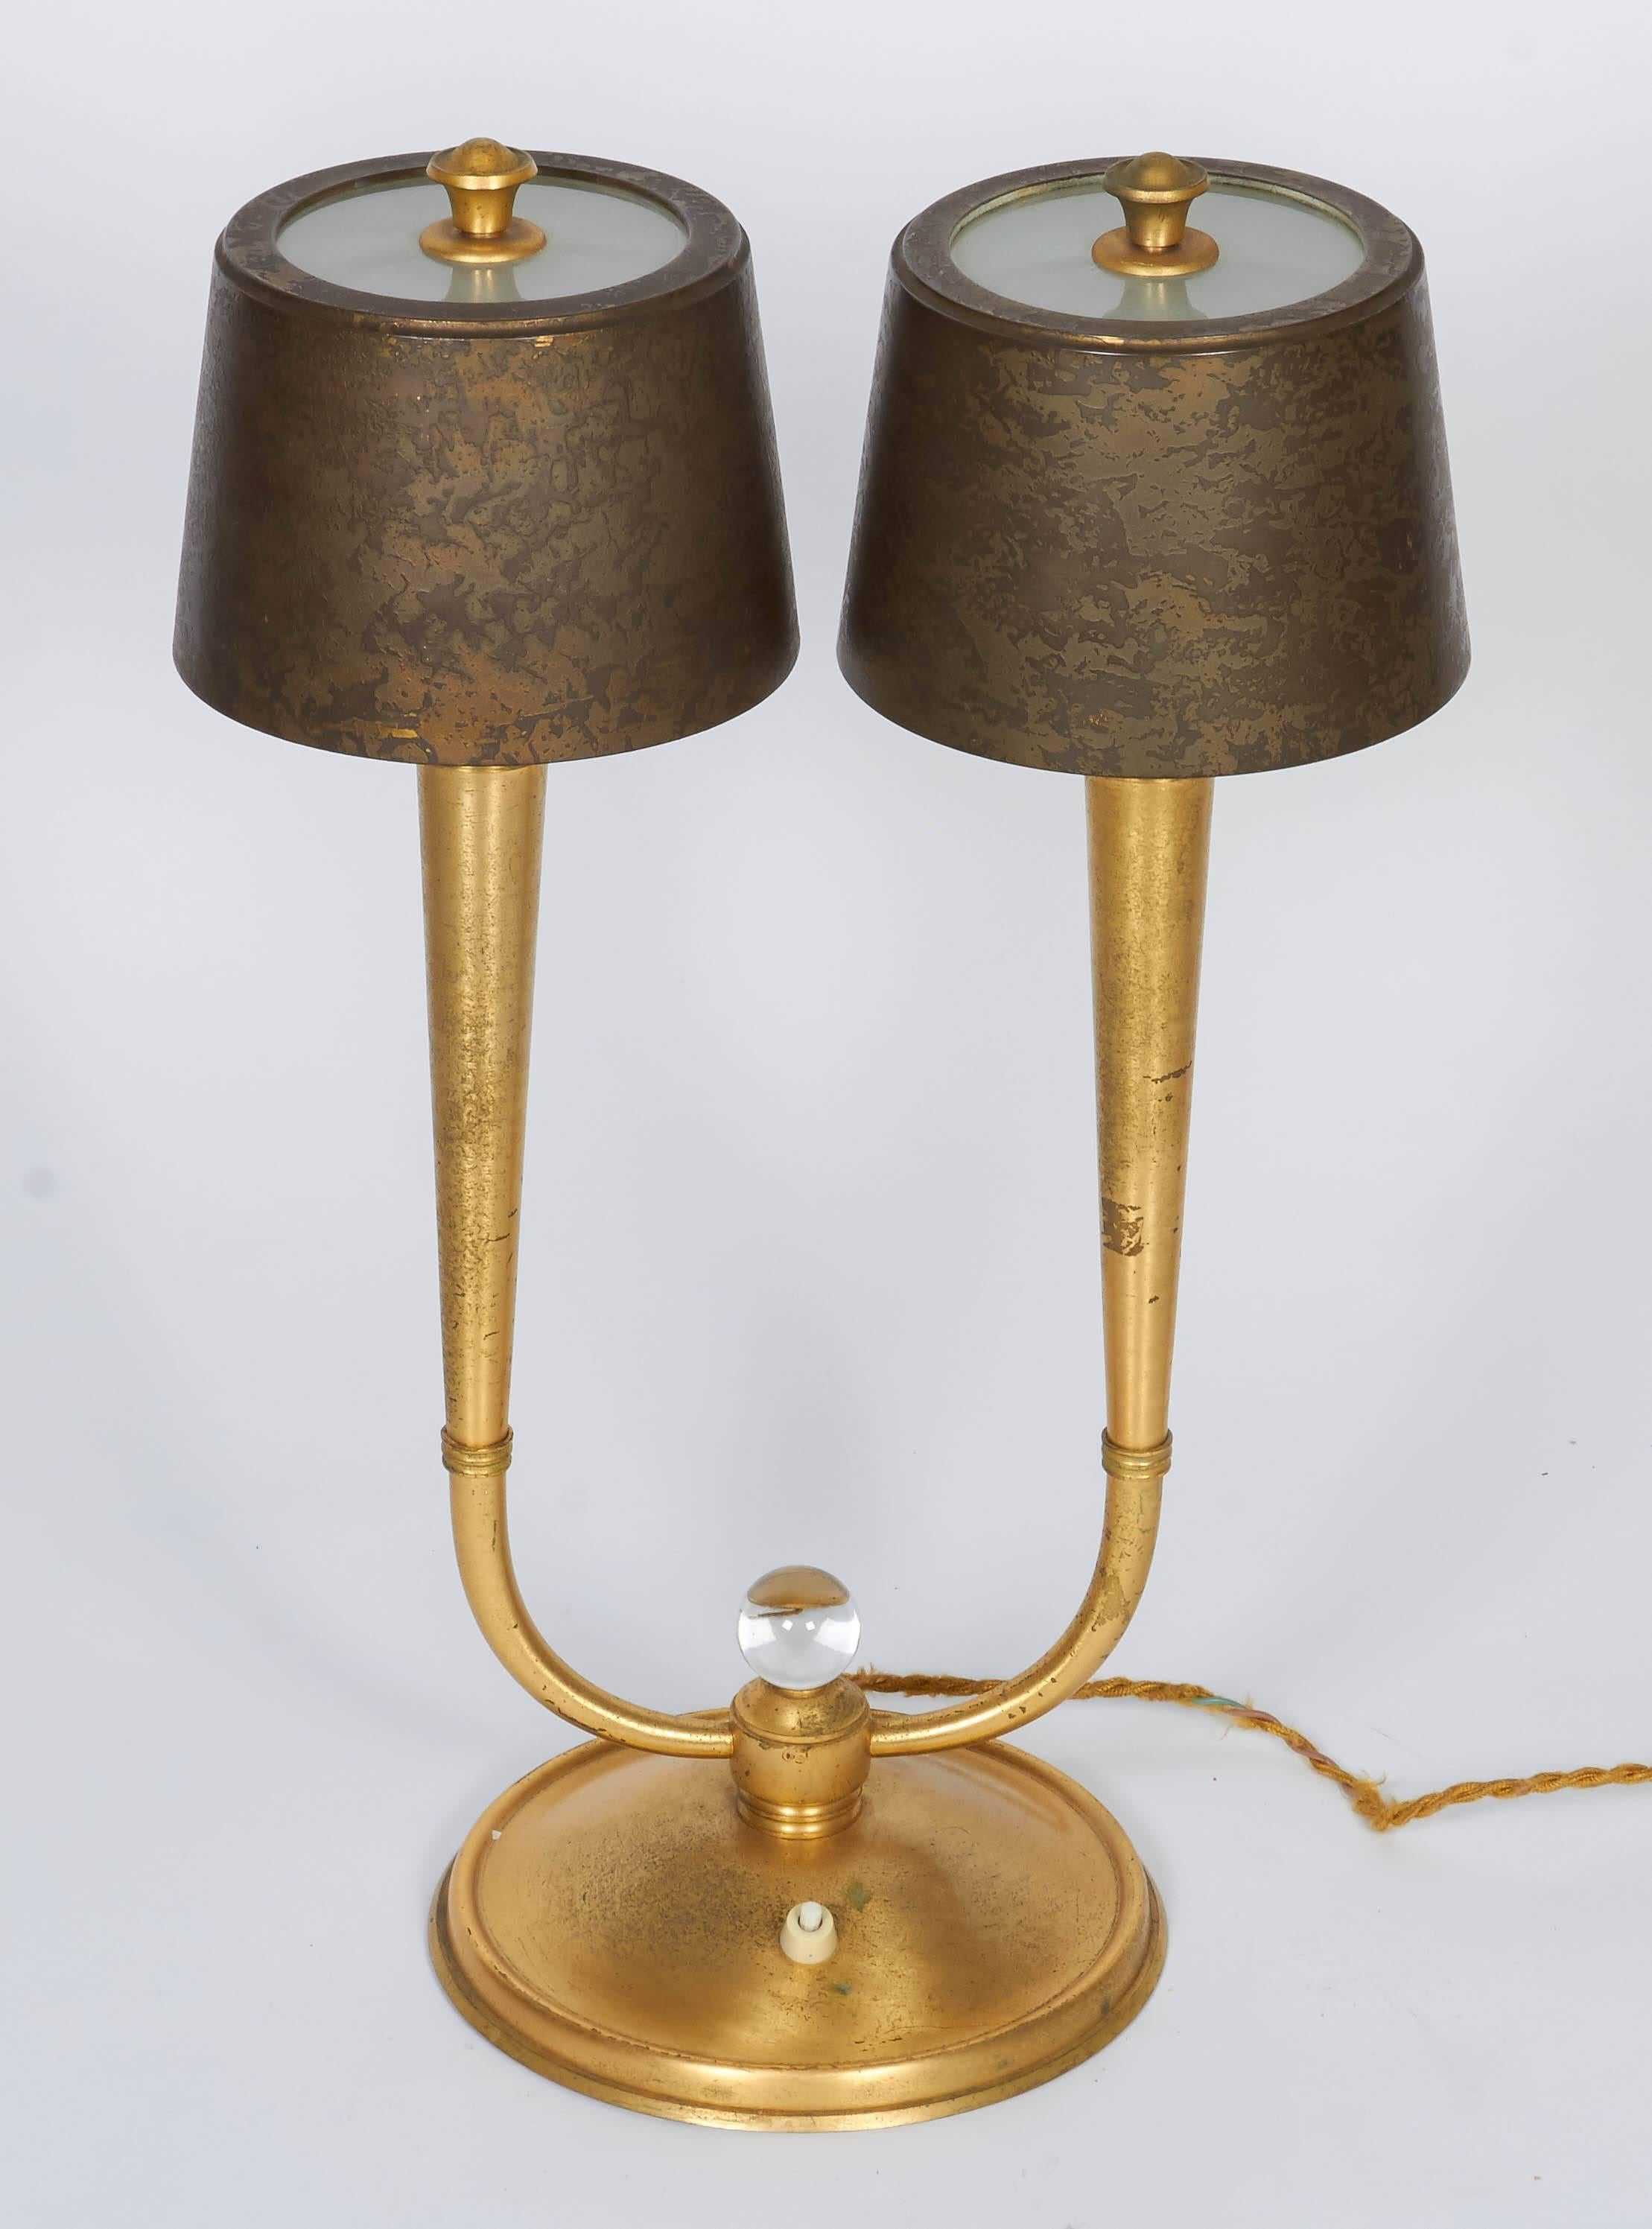 Ein Paar Tischlampen von Gent et Michon aus vergoldeter Bronze.
Maße: Höhe: 20,5